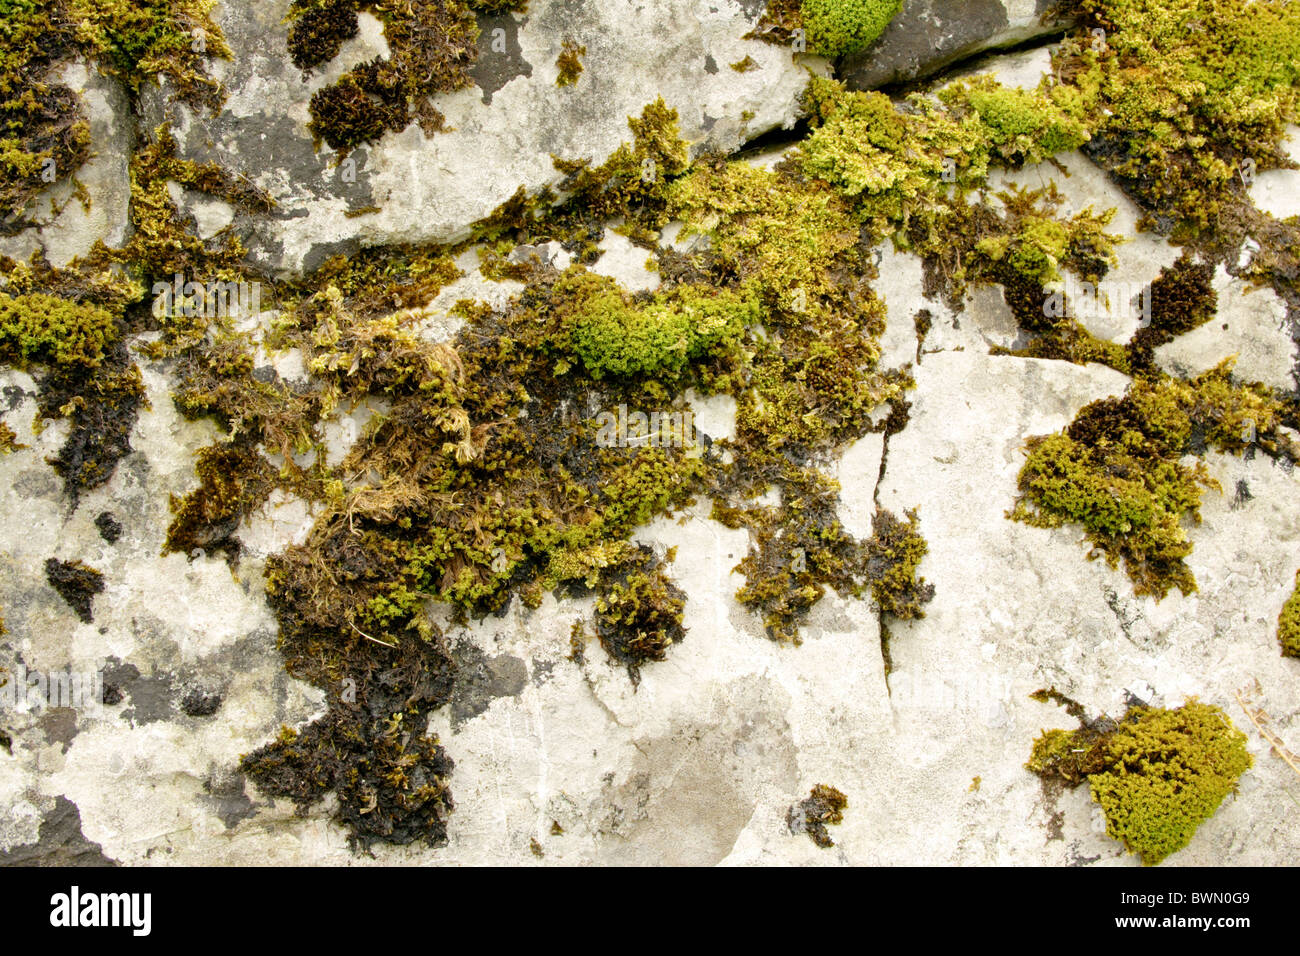 Moss growing on rock Stock Photo